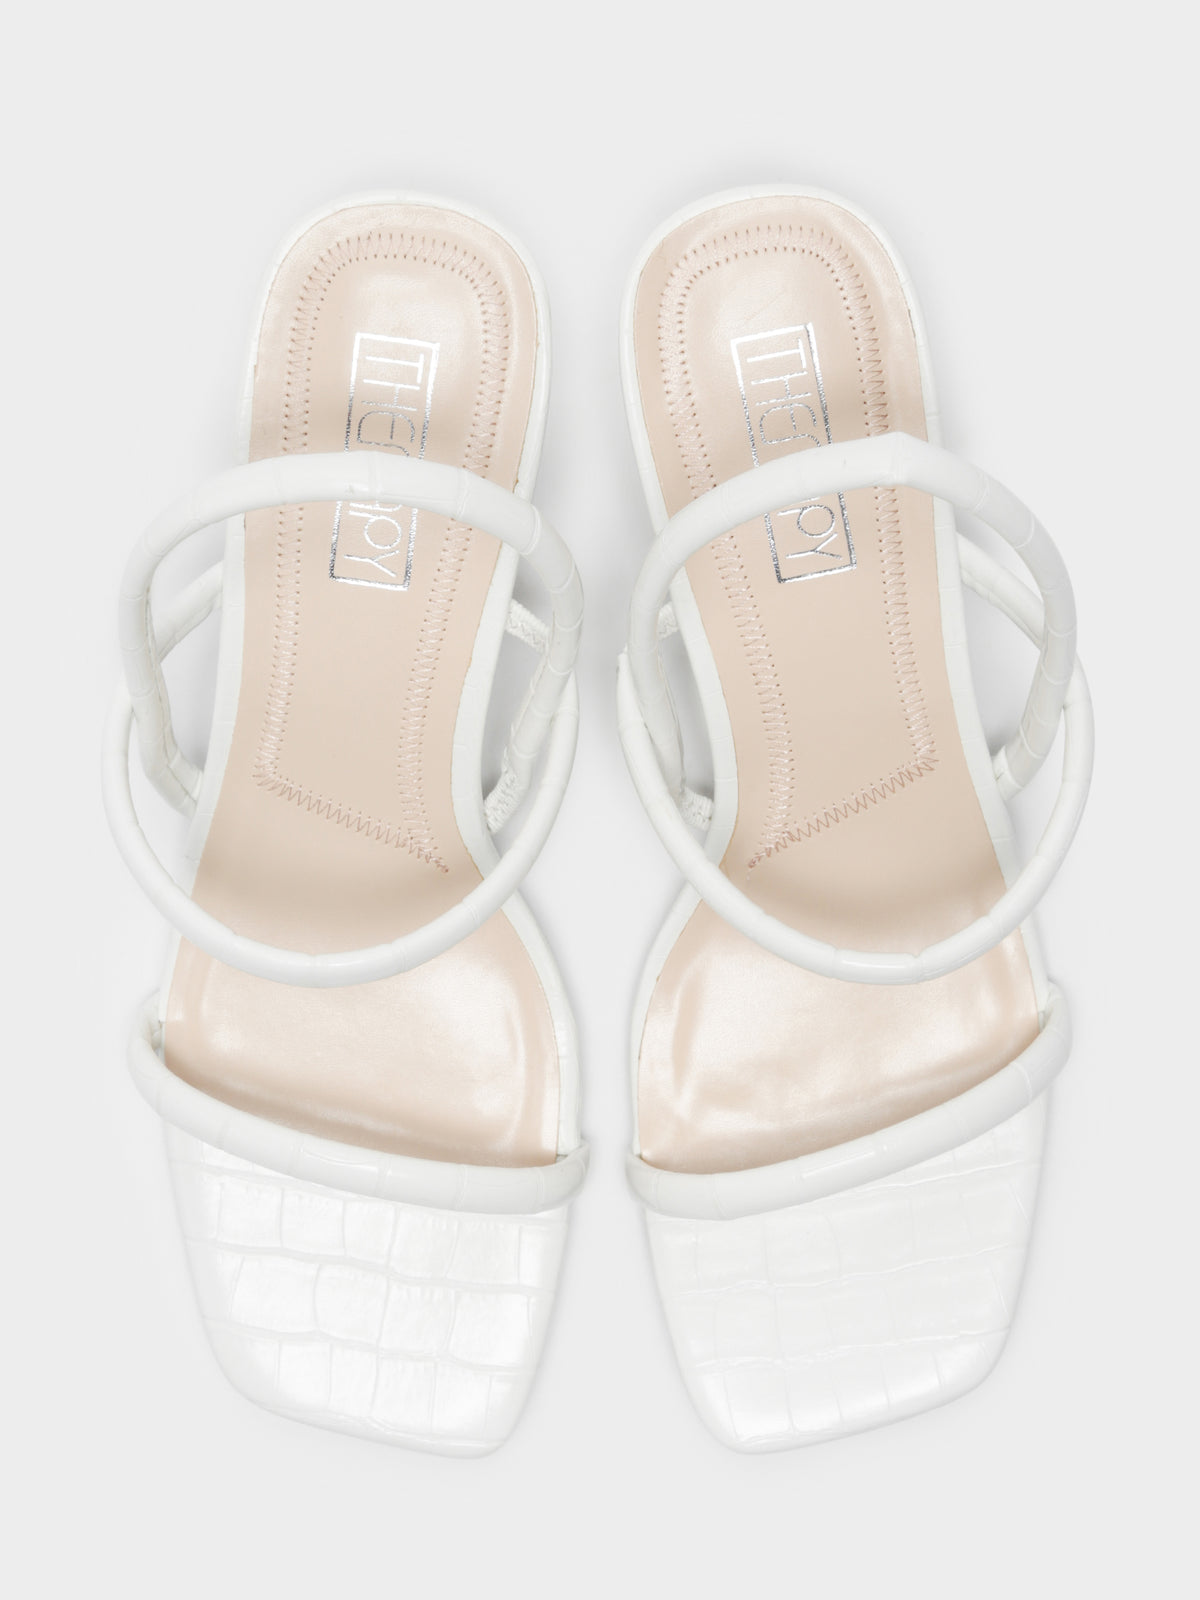 Betta Heels in White Croc